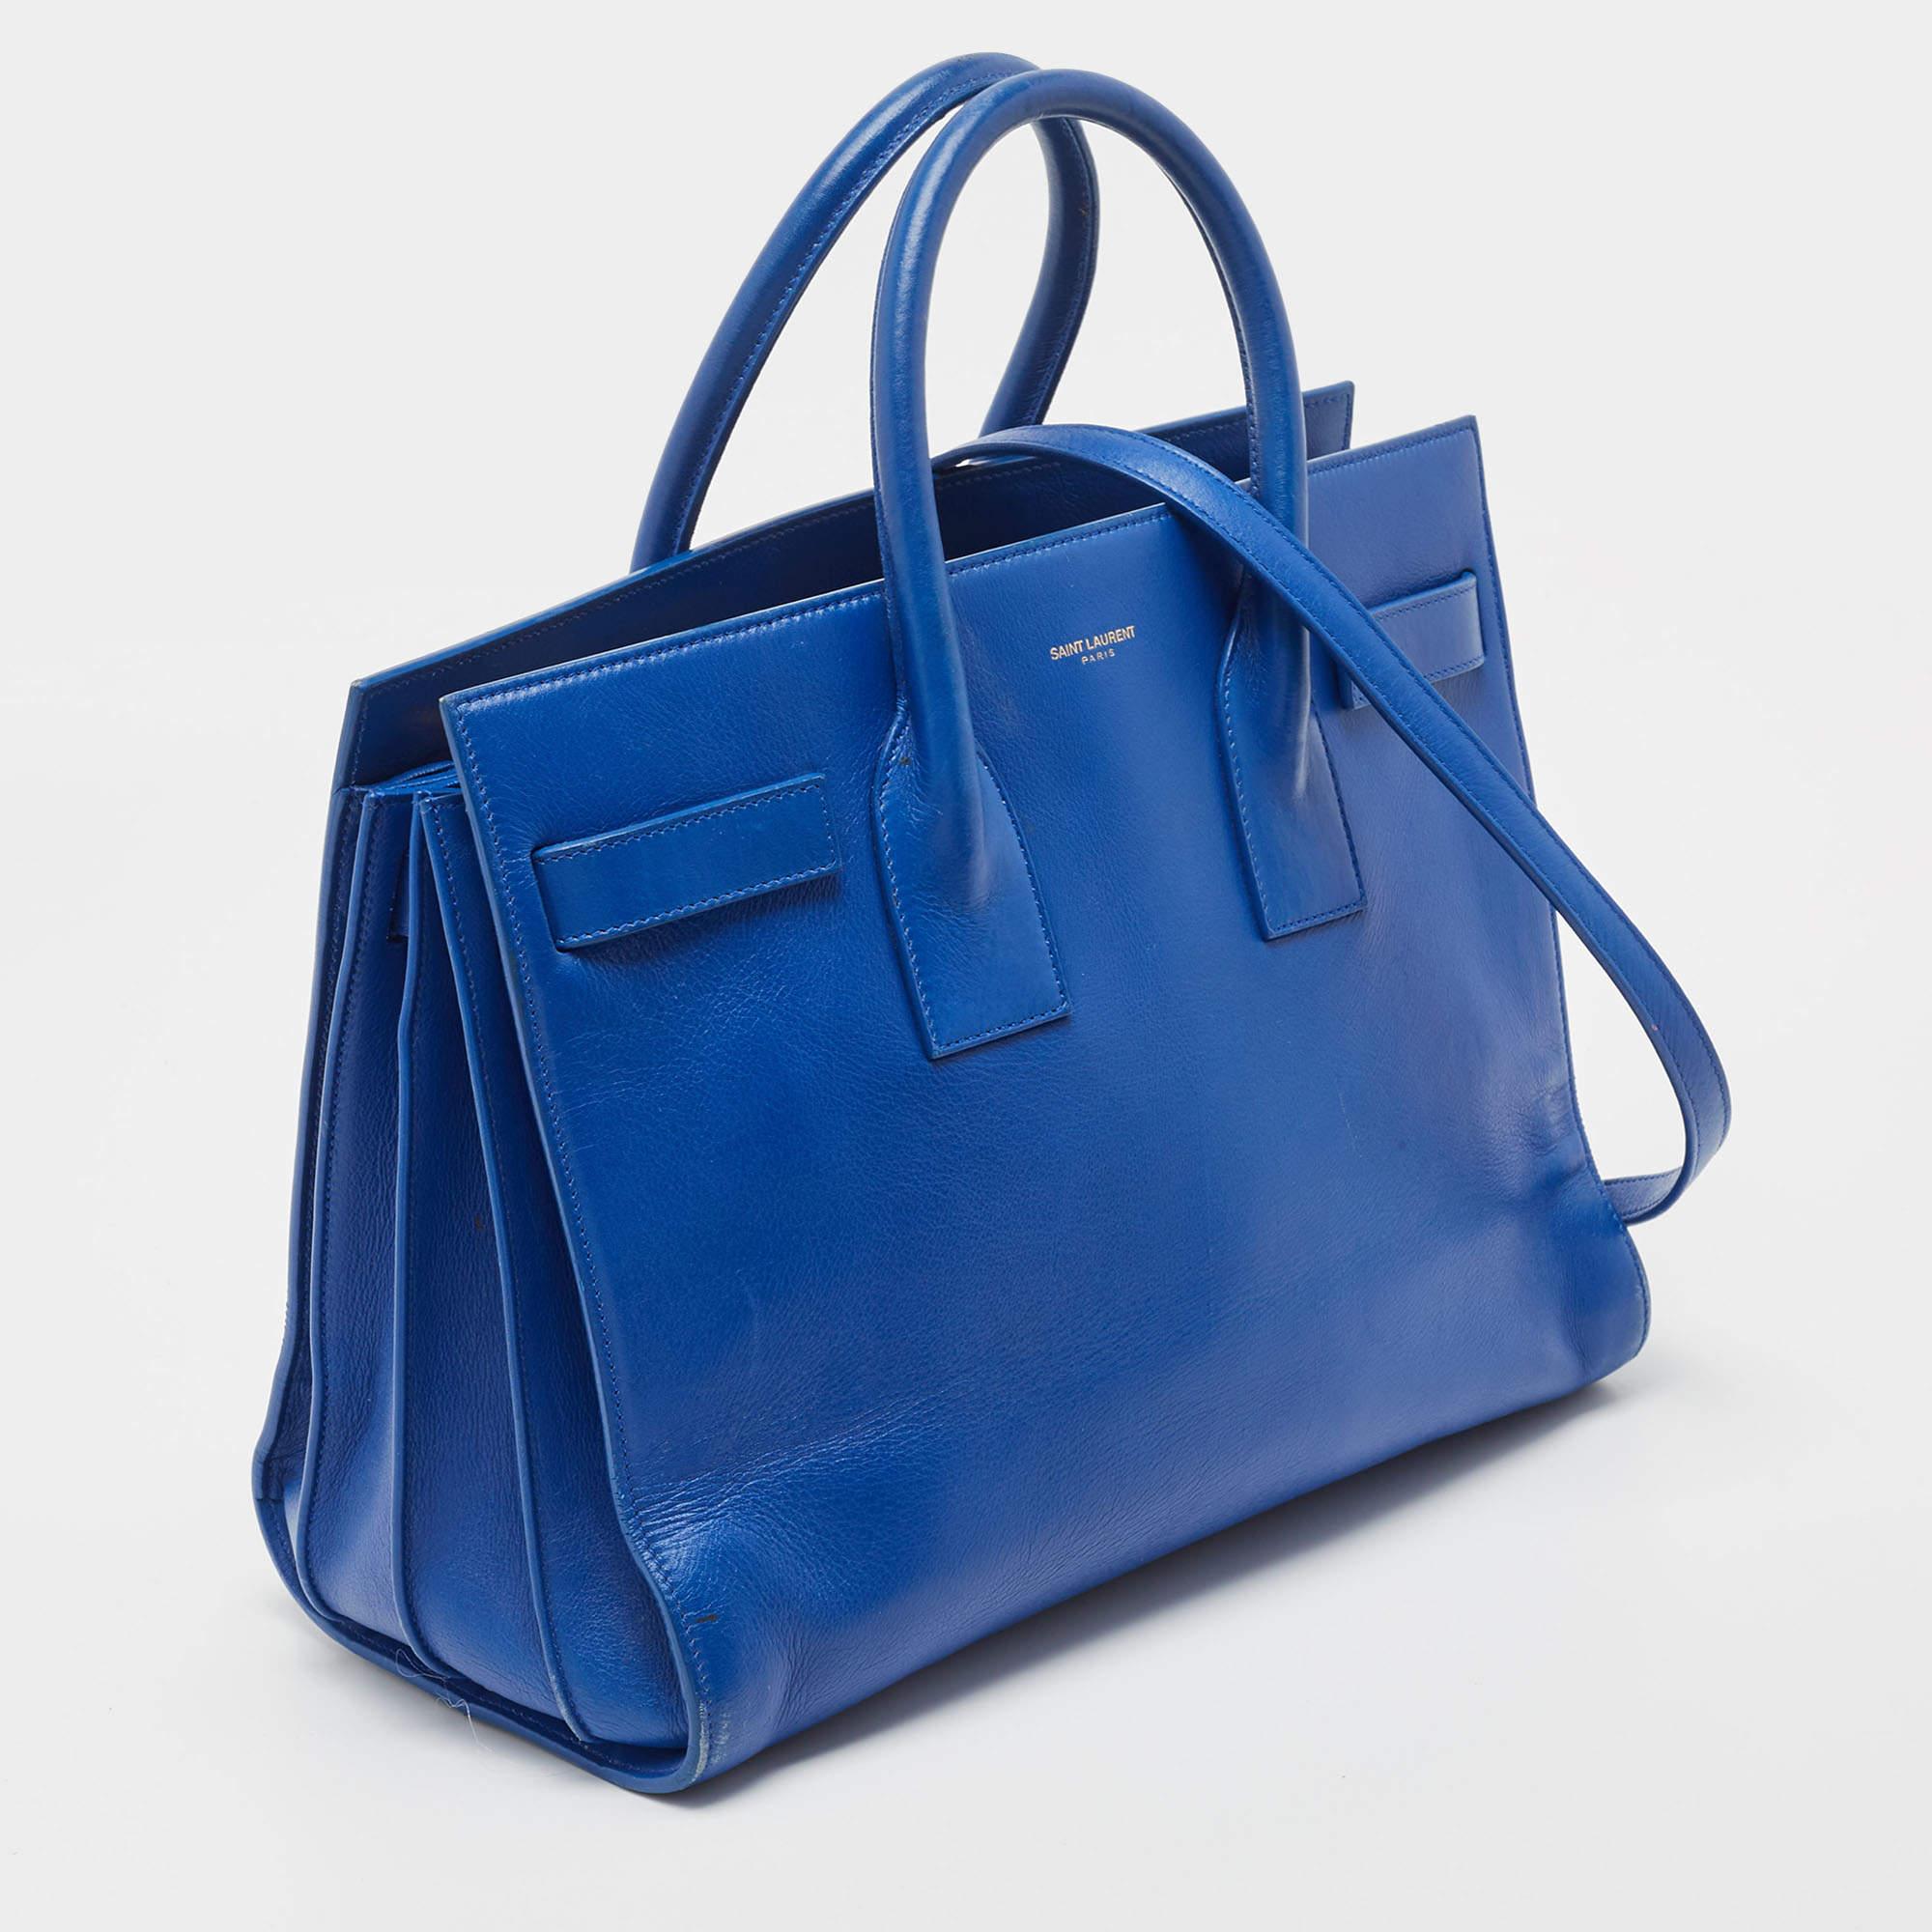 Saint Laurent Blue Leather Small Classic Sac De Jour Tote In Fair Condition For Sale In Dubai, Al Qouz 2